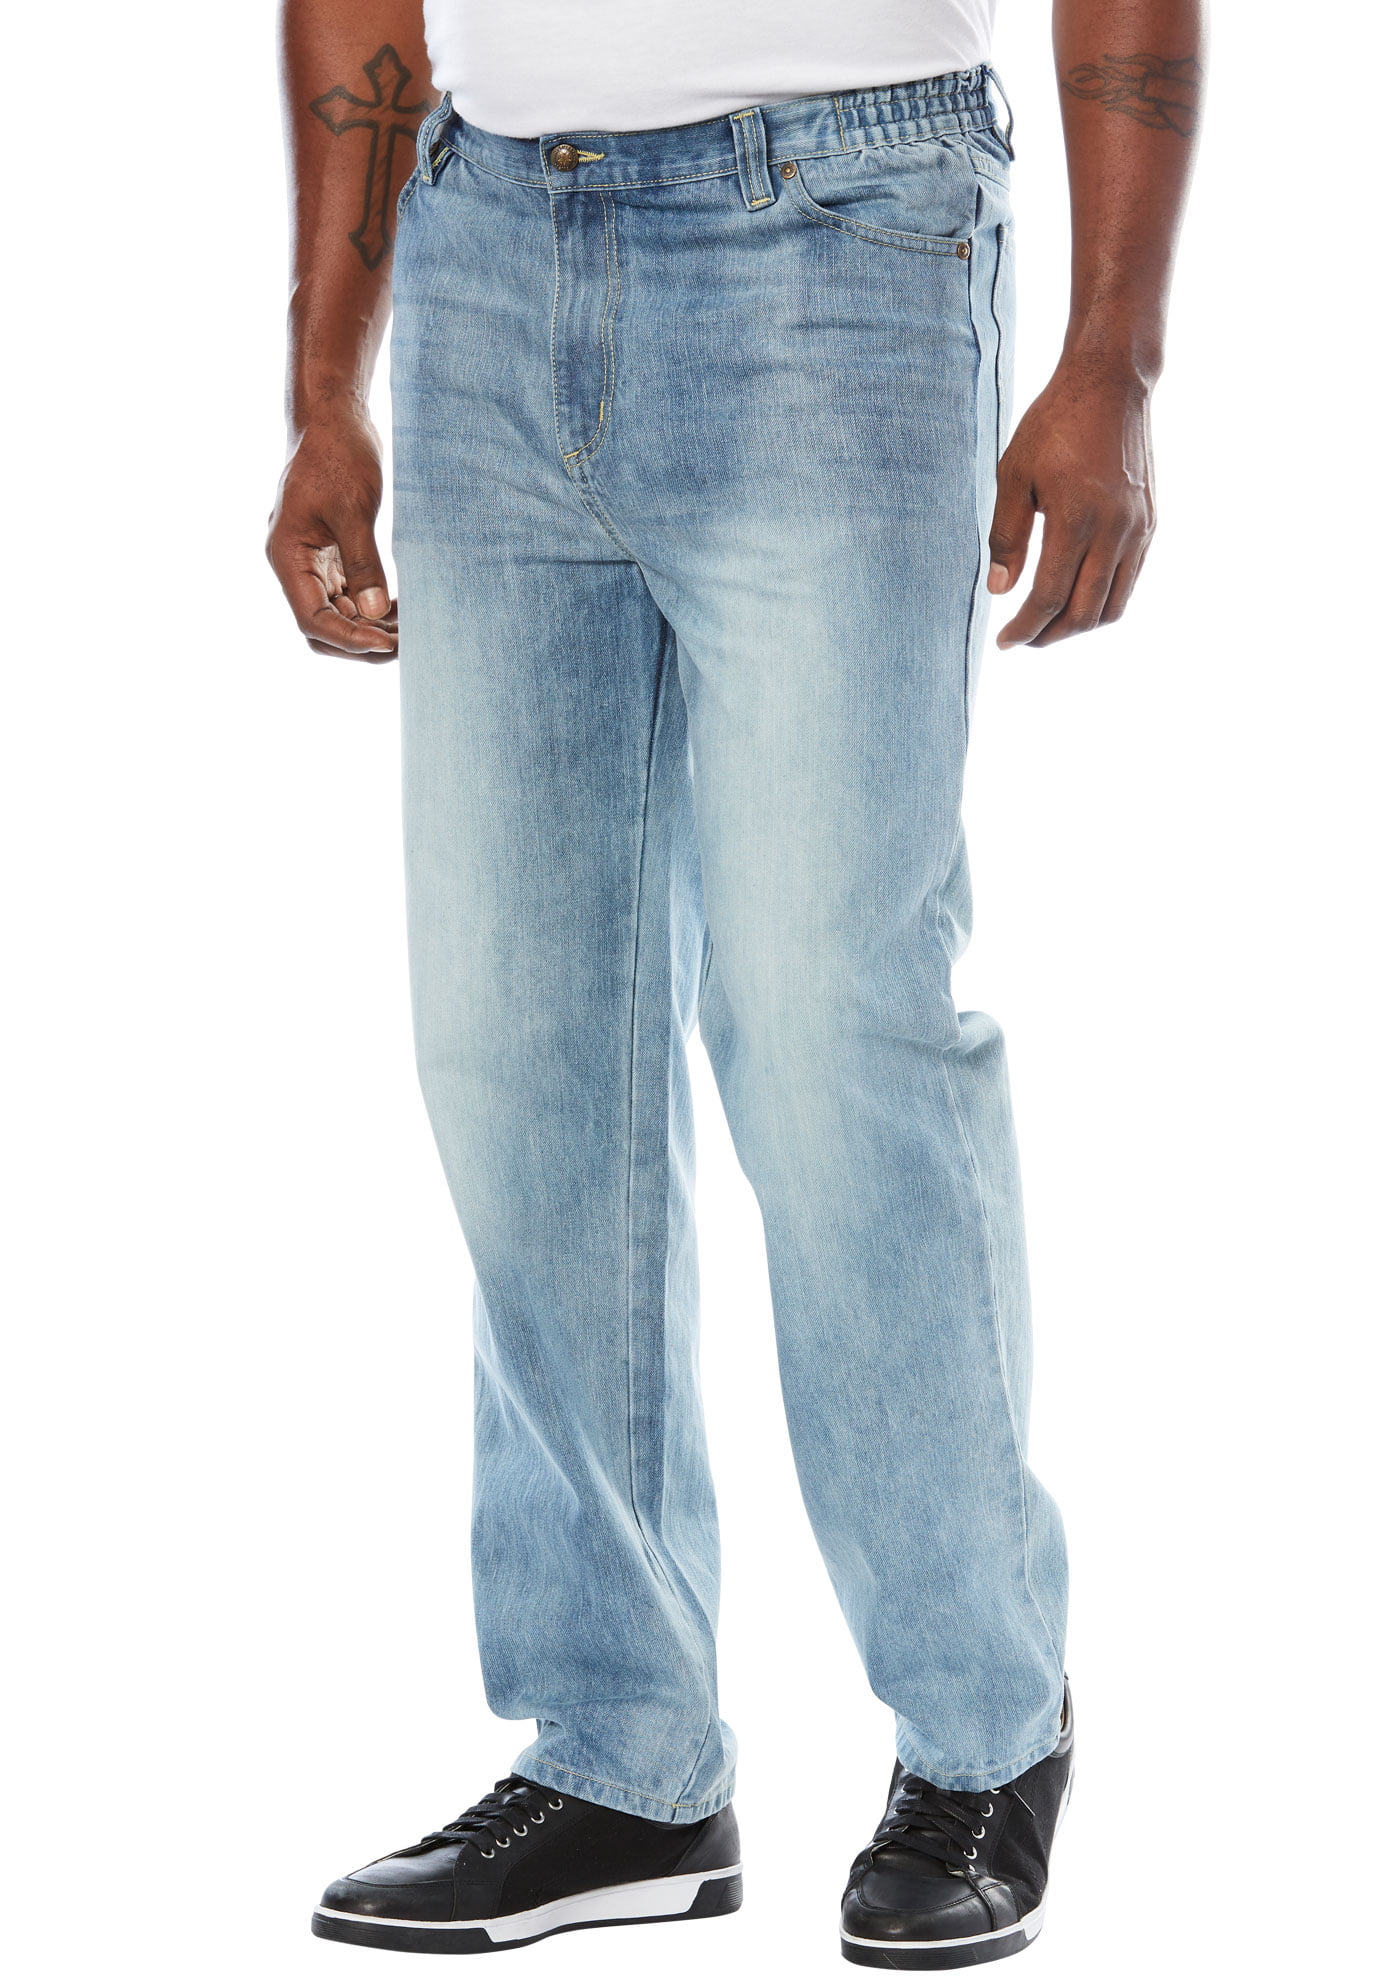 New Mens Big & Tall Athletic Jeans Light Blue 58 W x 38 L Liberty Blues Unhemmed 